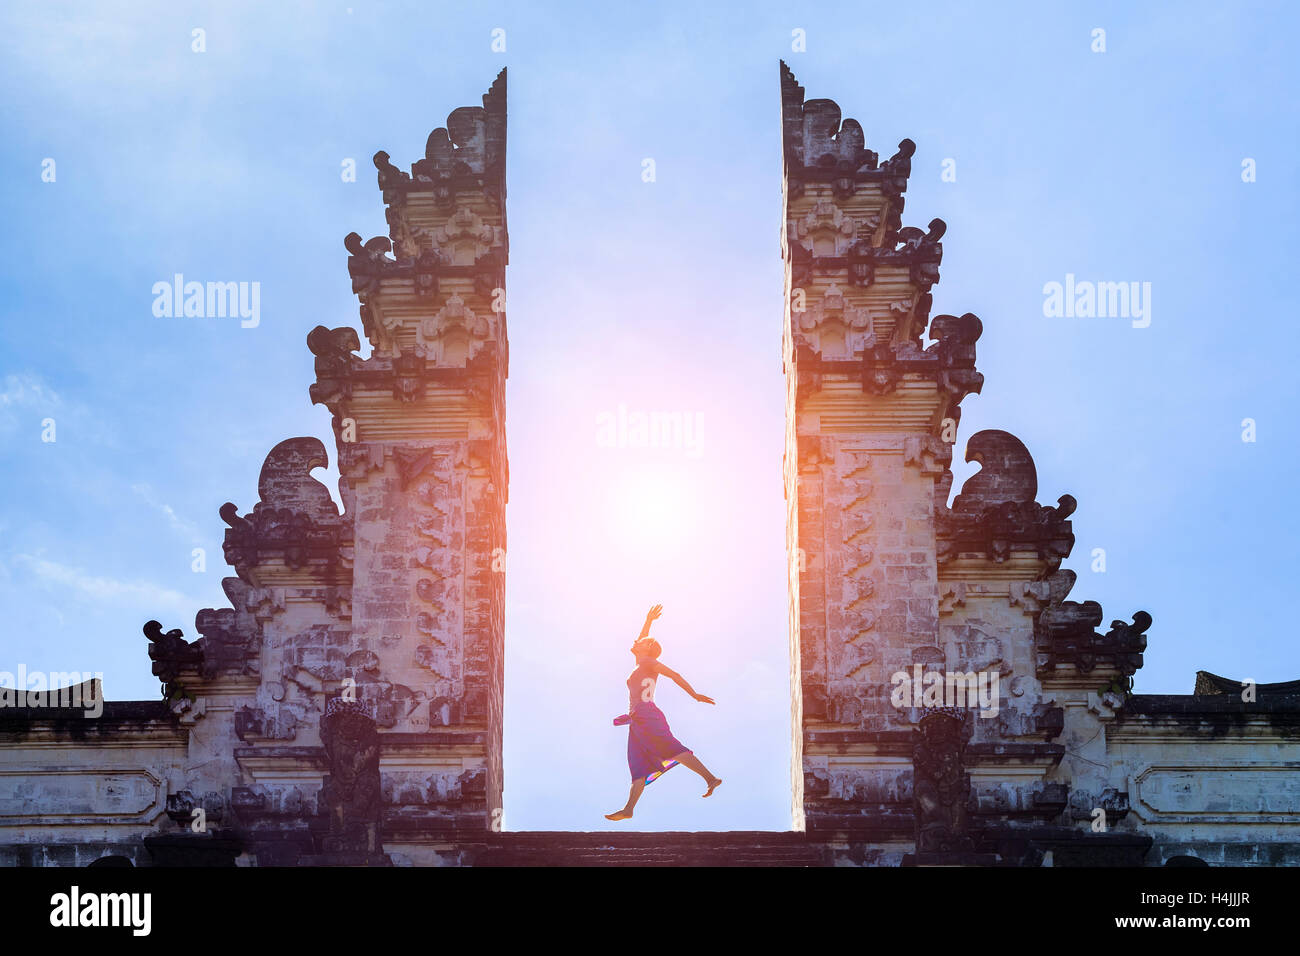 Donna traveler jumping con energia e vitalità alla porta di un tempio, Bali, Indonesia Foto Stock